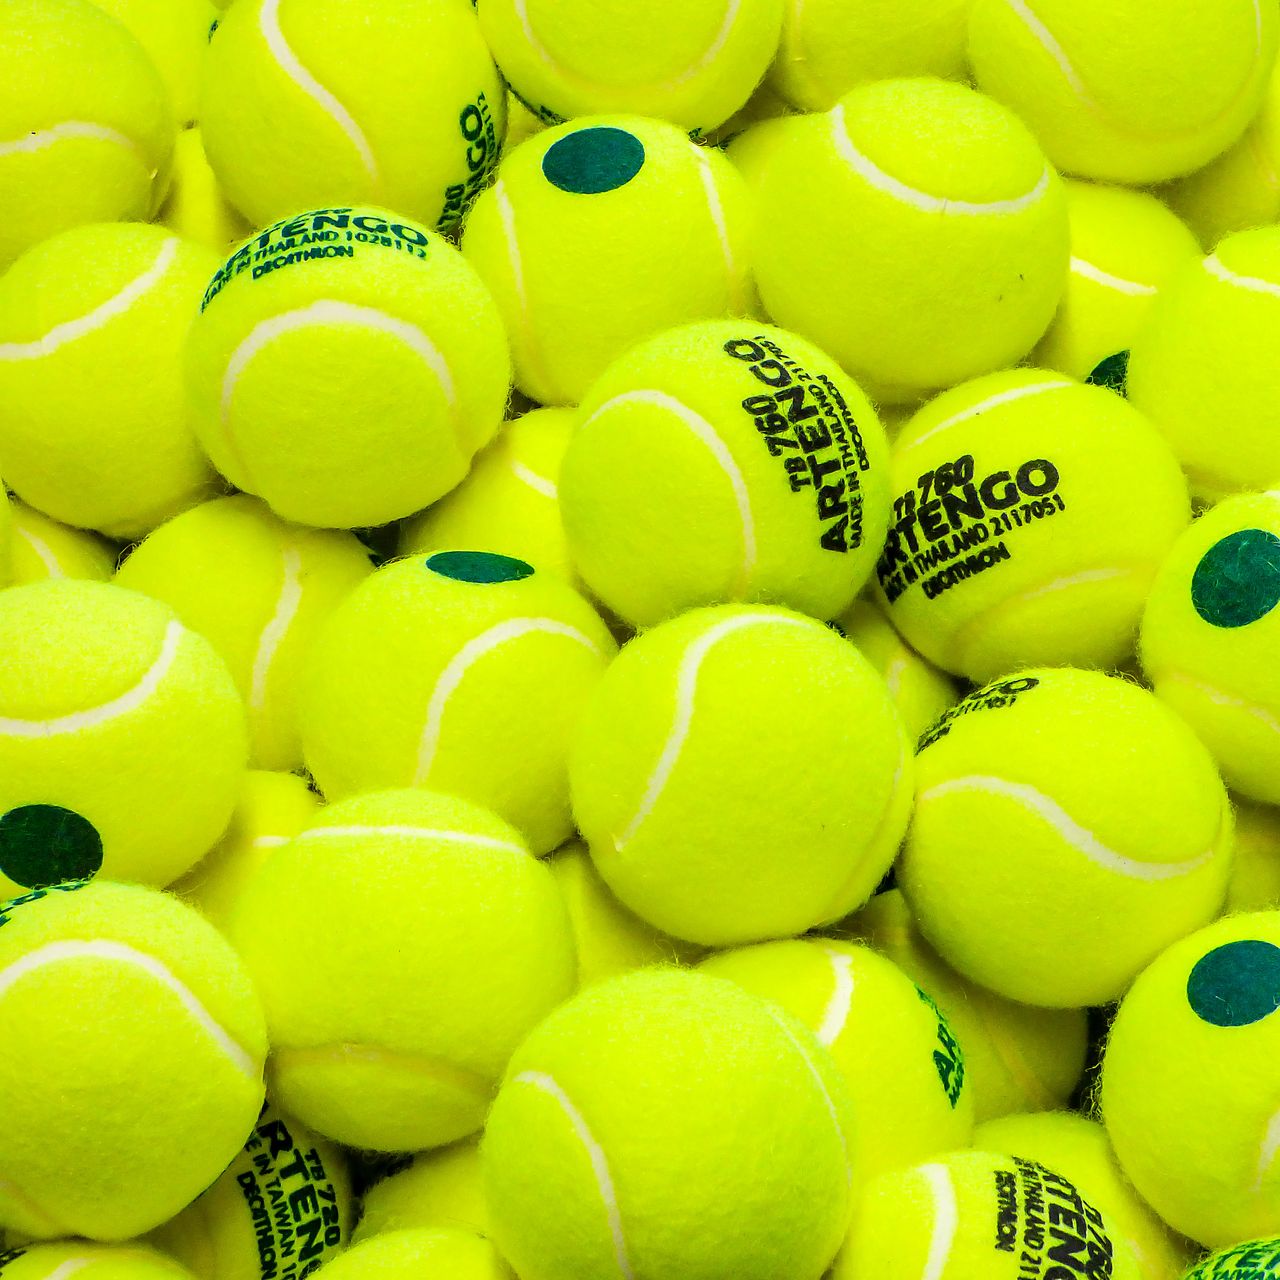 1280x1280 Wallpaper tennis, balls, sport, lime green, yellow